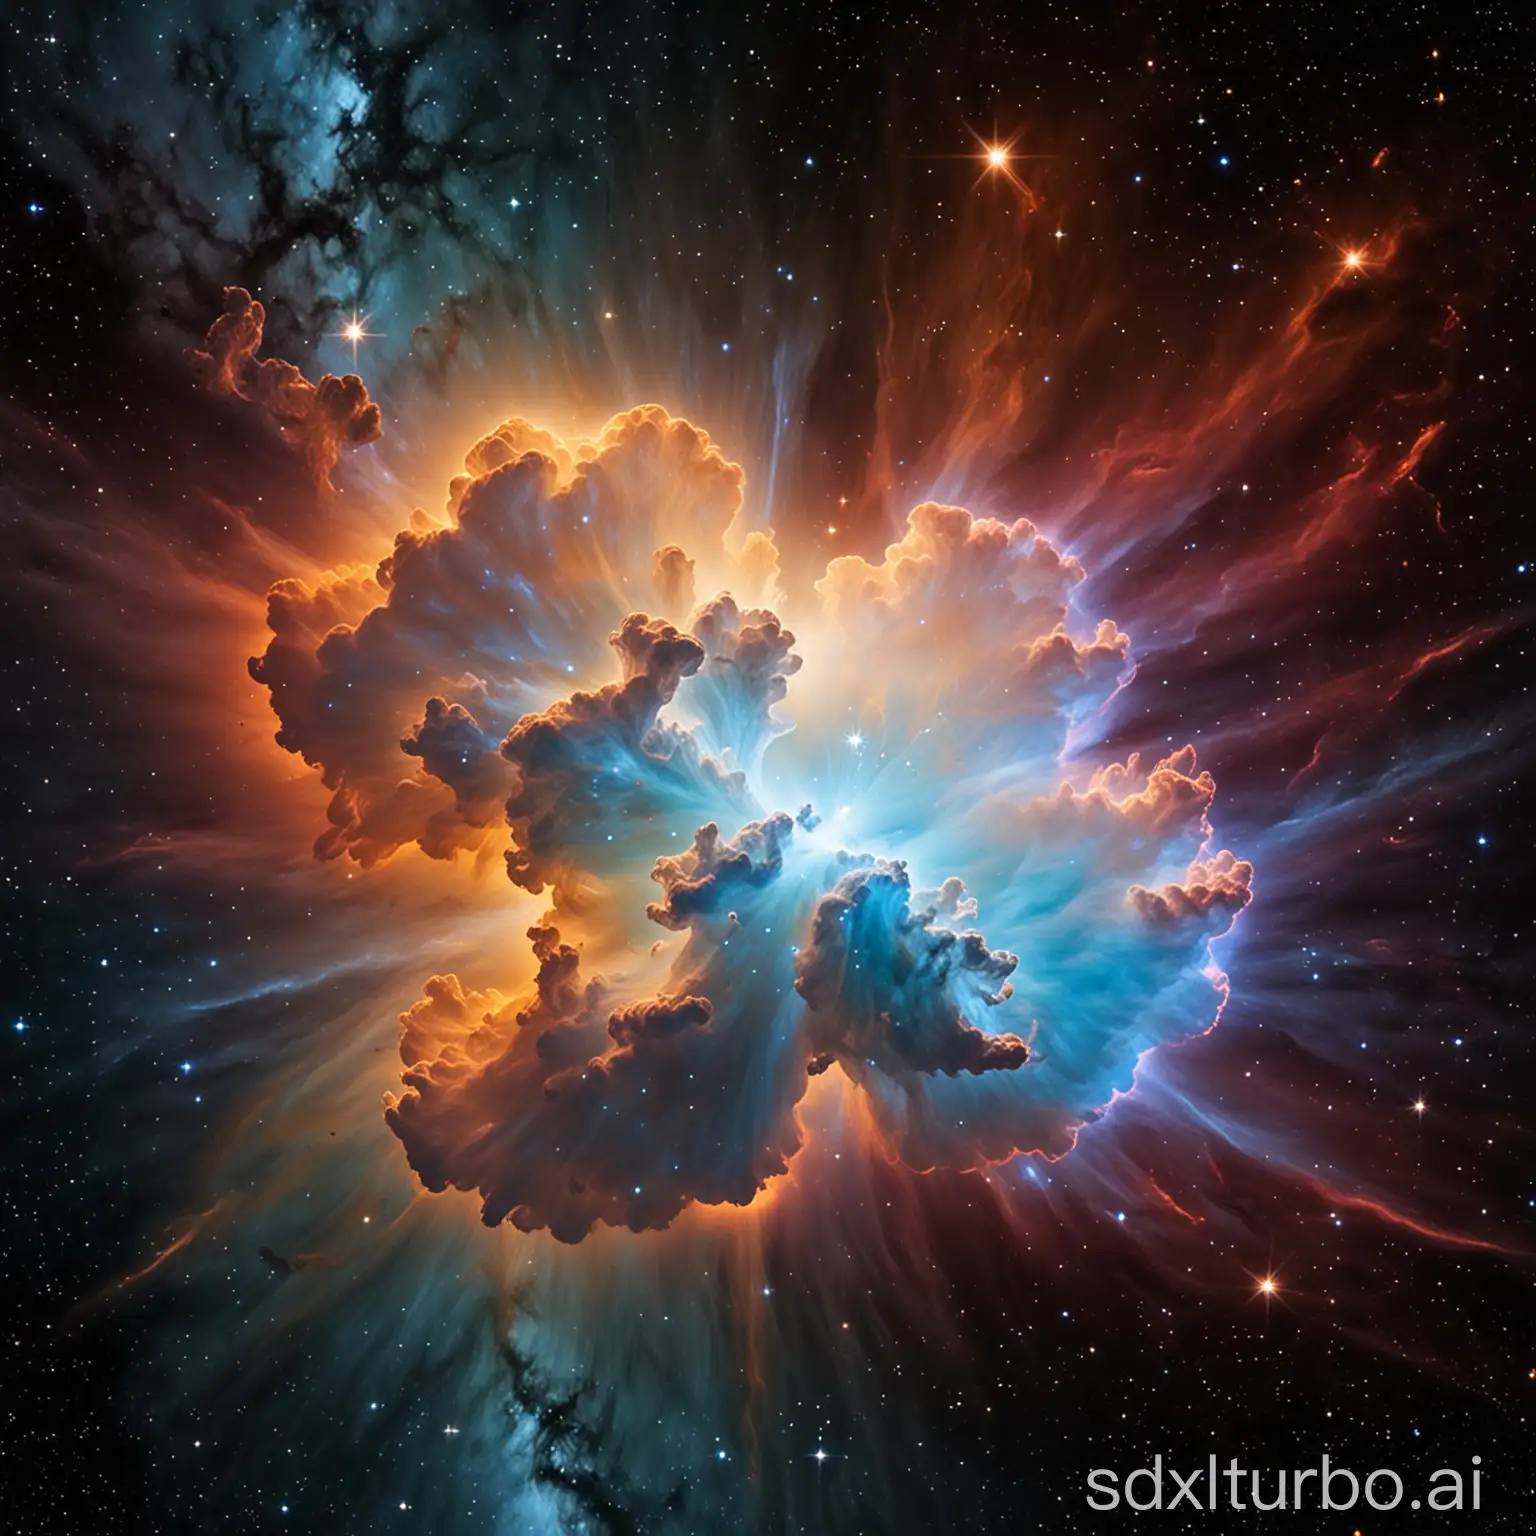 a cloud nebular in space